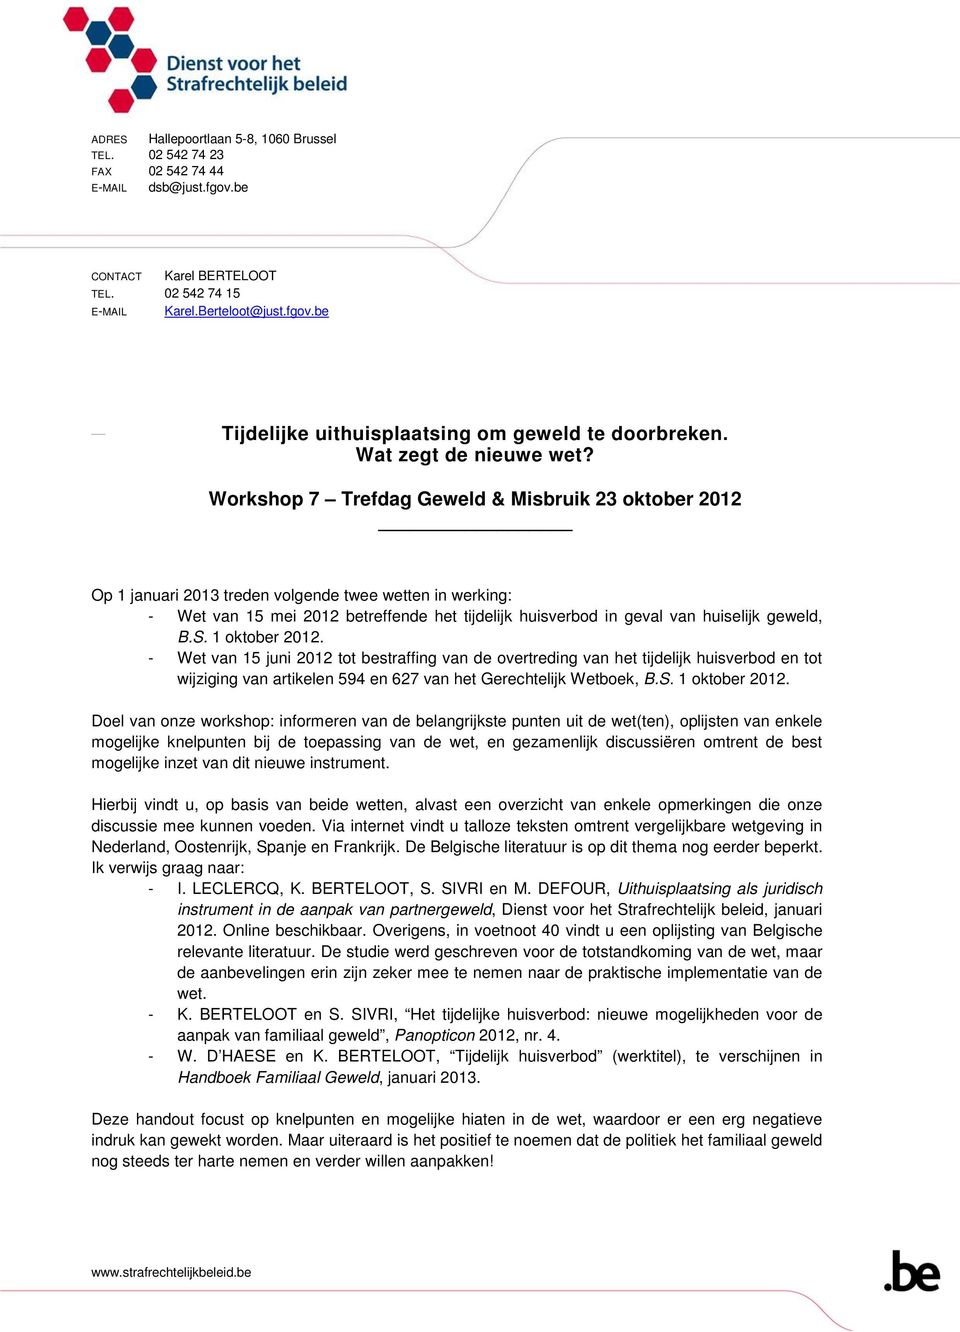 Workshop 7 Trefdag Geweld & Misbruik 23 oktober 2012 Op 1 januari 2013 treden volgende twee wetten in werking: - Wet van 15 mei 2012 betreffende het tijdelijk huisverbod in geval van huiselijk